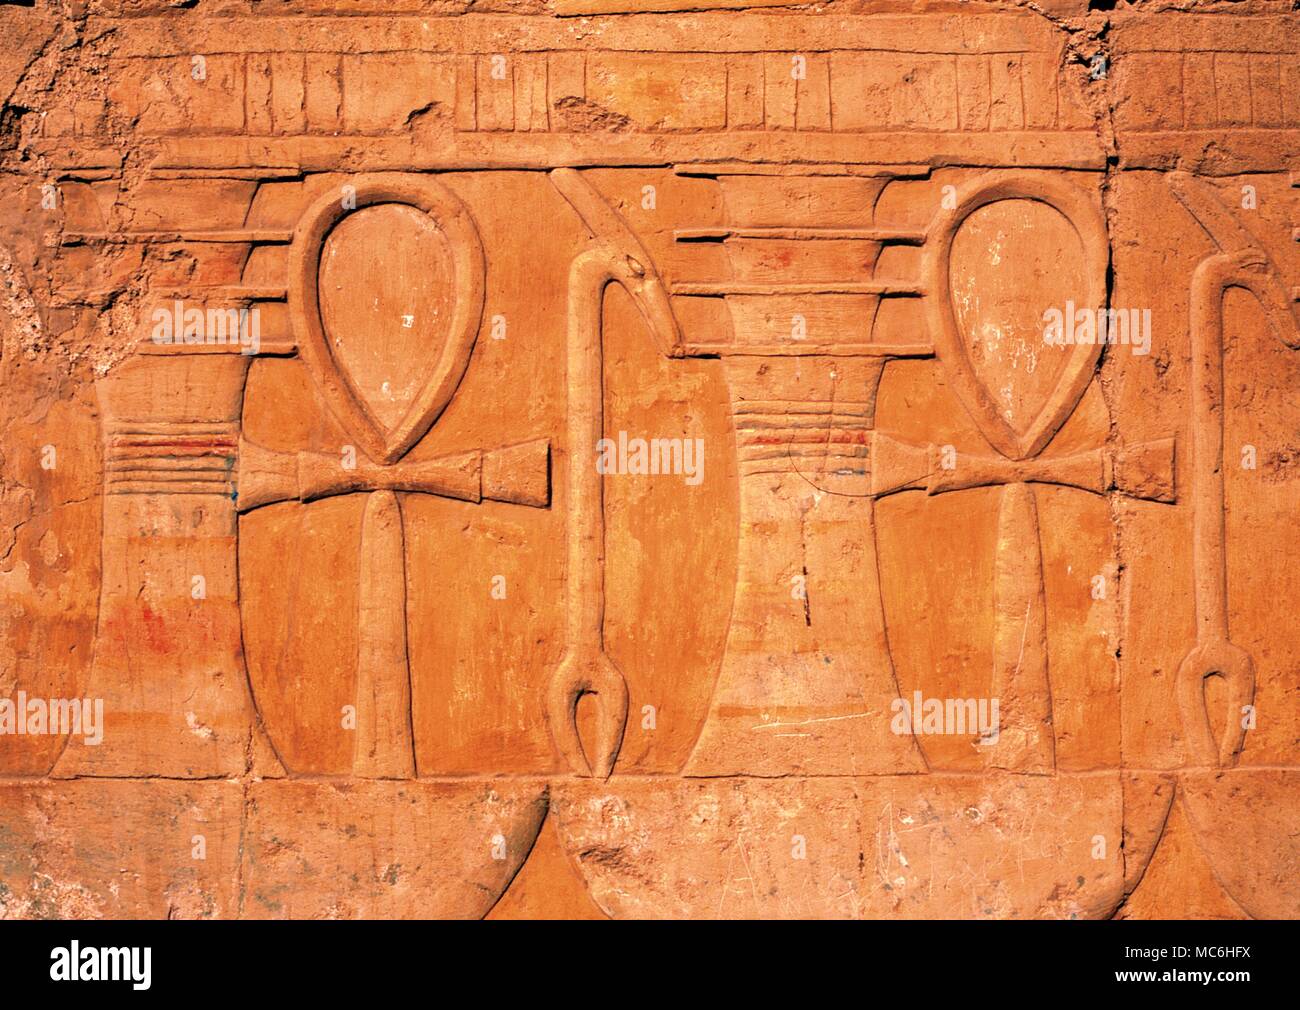 Símbolos mágicos. Bajorrelieve imágenes pintadas del sagrado Ankh (La fuerza vital), ENEL Templo Hathor de Hapshepsut, Luxor .Egipto. Foto de stock